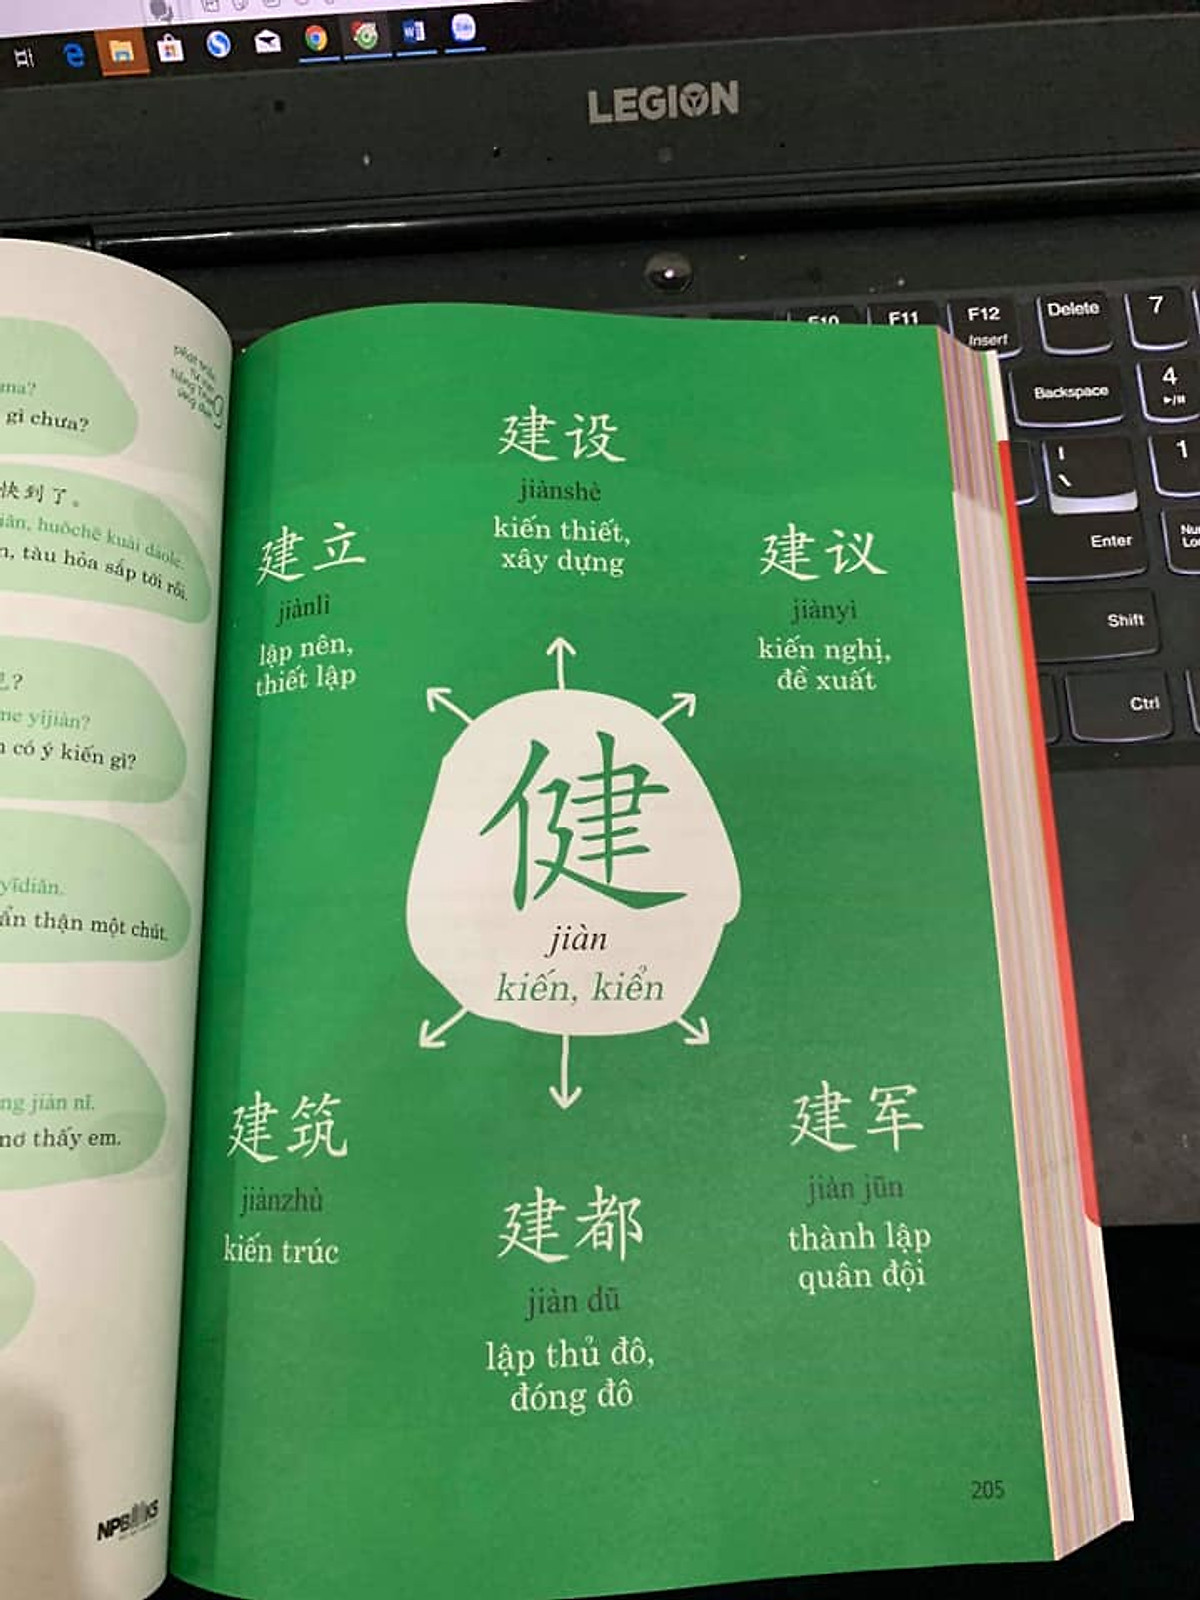 Sách- Combo 2 sách Bài tập luyện dịch tiếng Trung ứng dụng (Sơ -Trung cấp, Giao tiếp HSK có mp3 nghe, có đáp án) +Phát triển từ vựng tiếng Trung Ứng dụng (Có Audio nghe) + DVD tài liệu